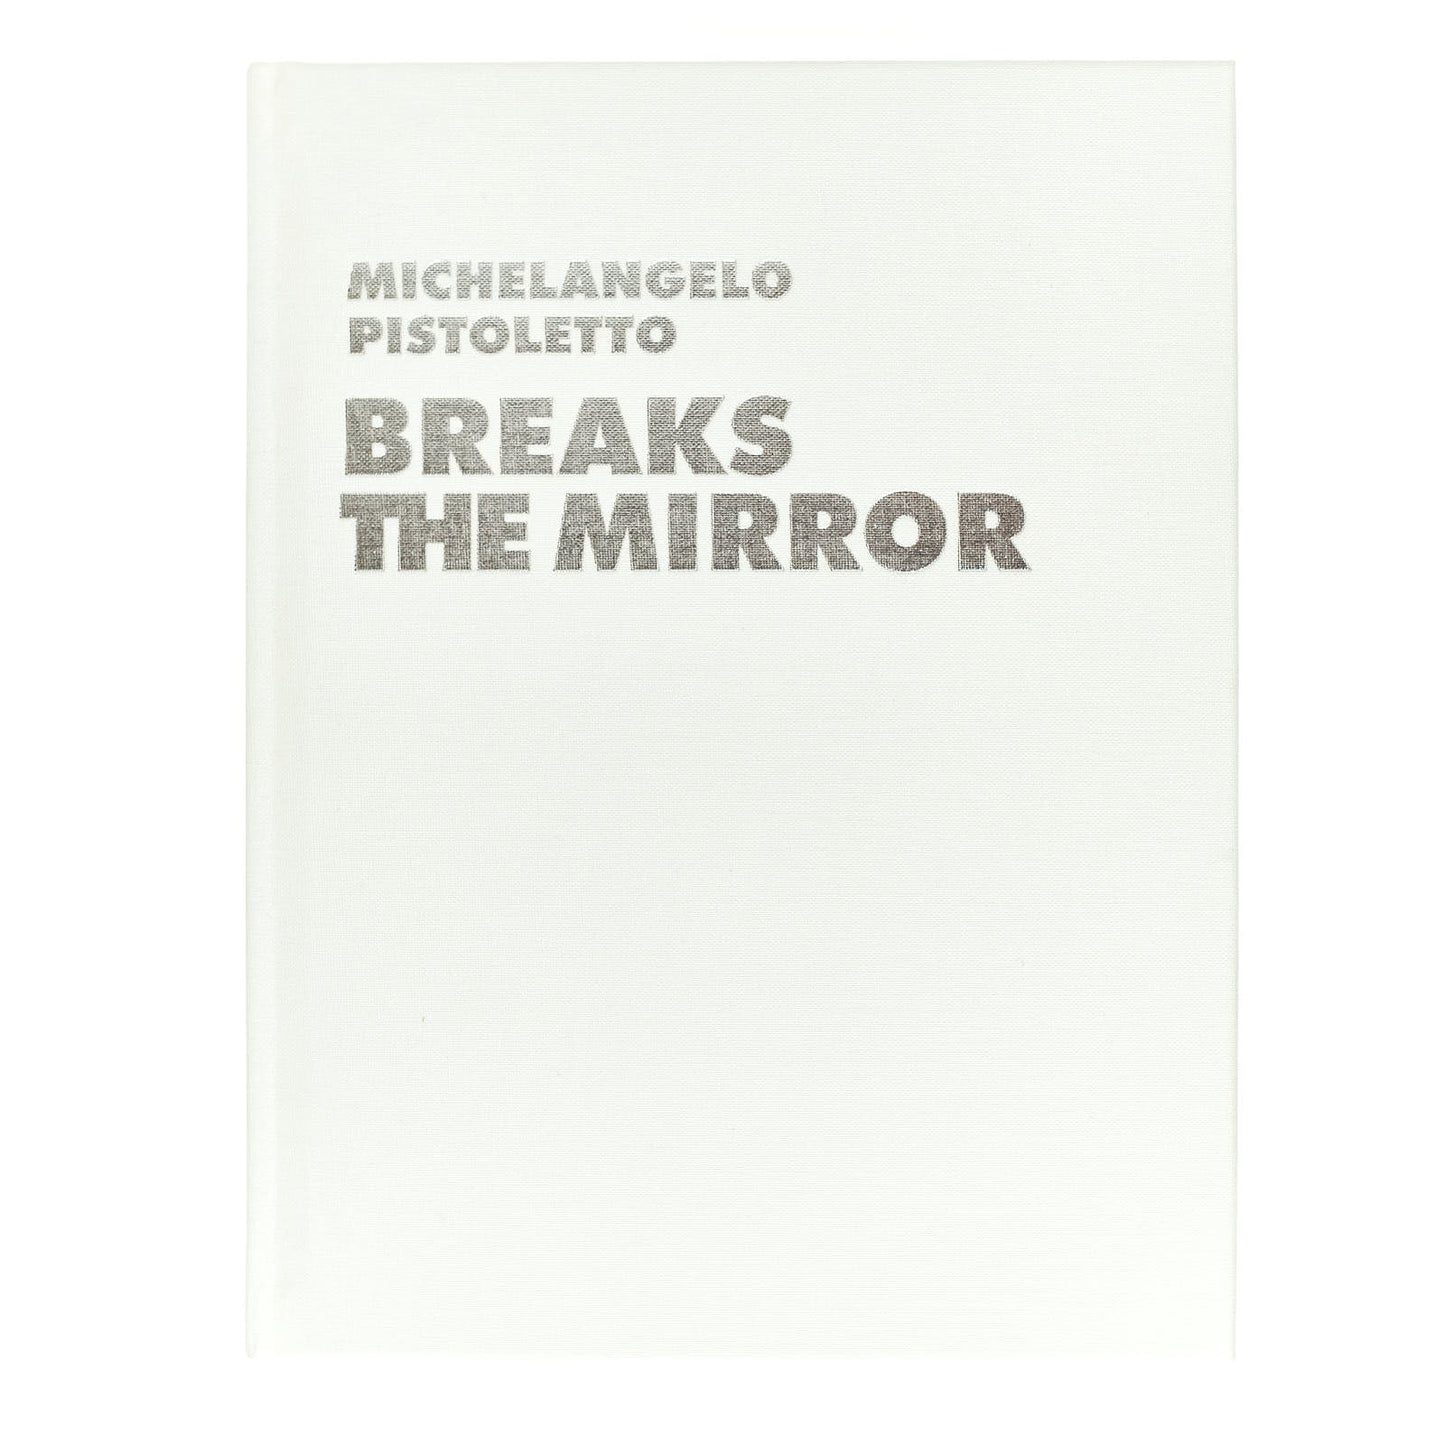 Michelangelo Pistoletto -  Before the Mirror + Breaks the Mirror (cofanetto due volumi)